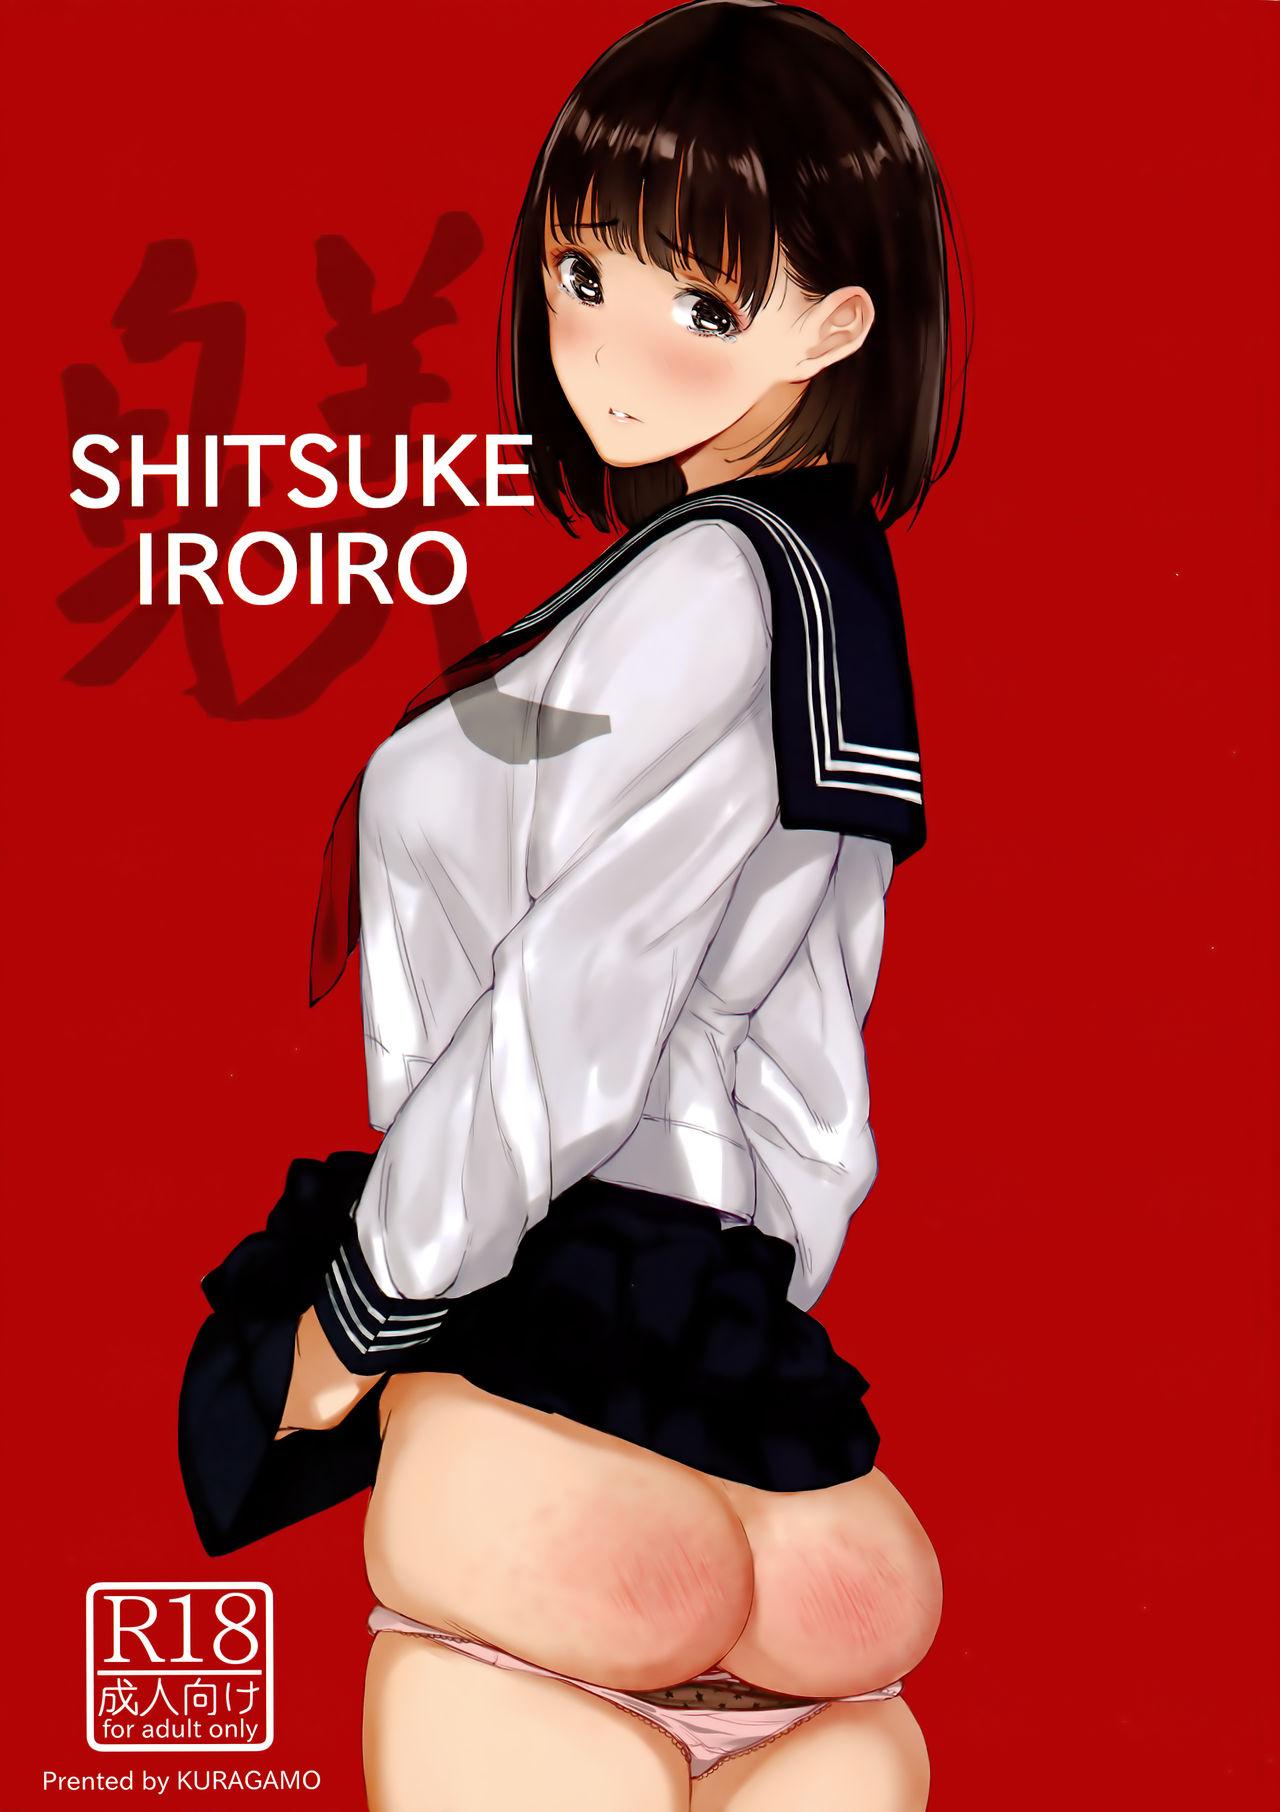 SHITSUKE IROIRO 0